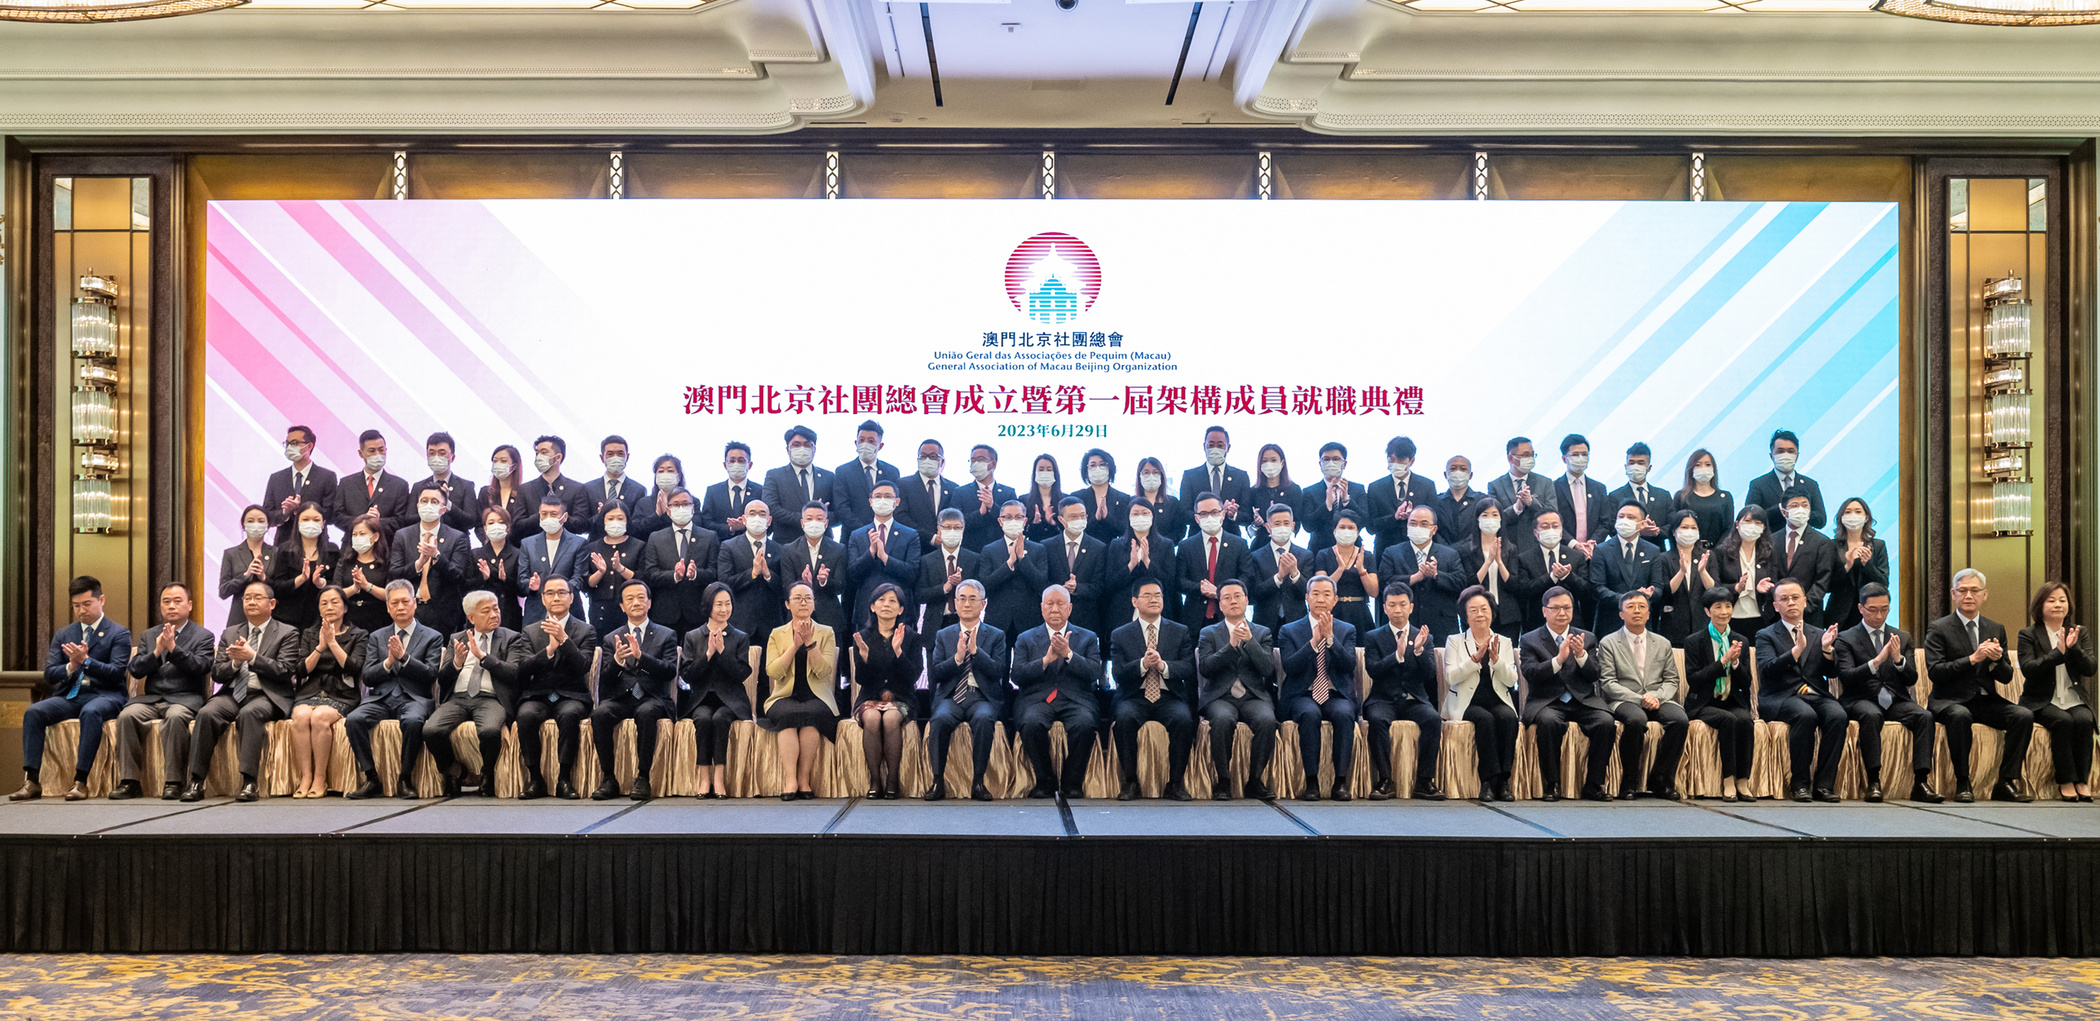 Associativismo | Nova associação promove colaboração com Pequim